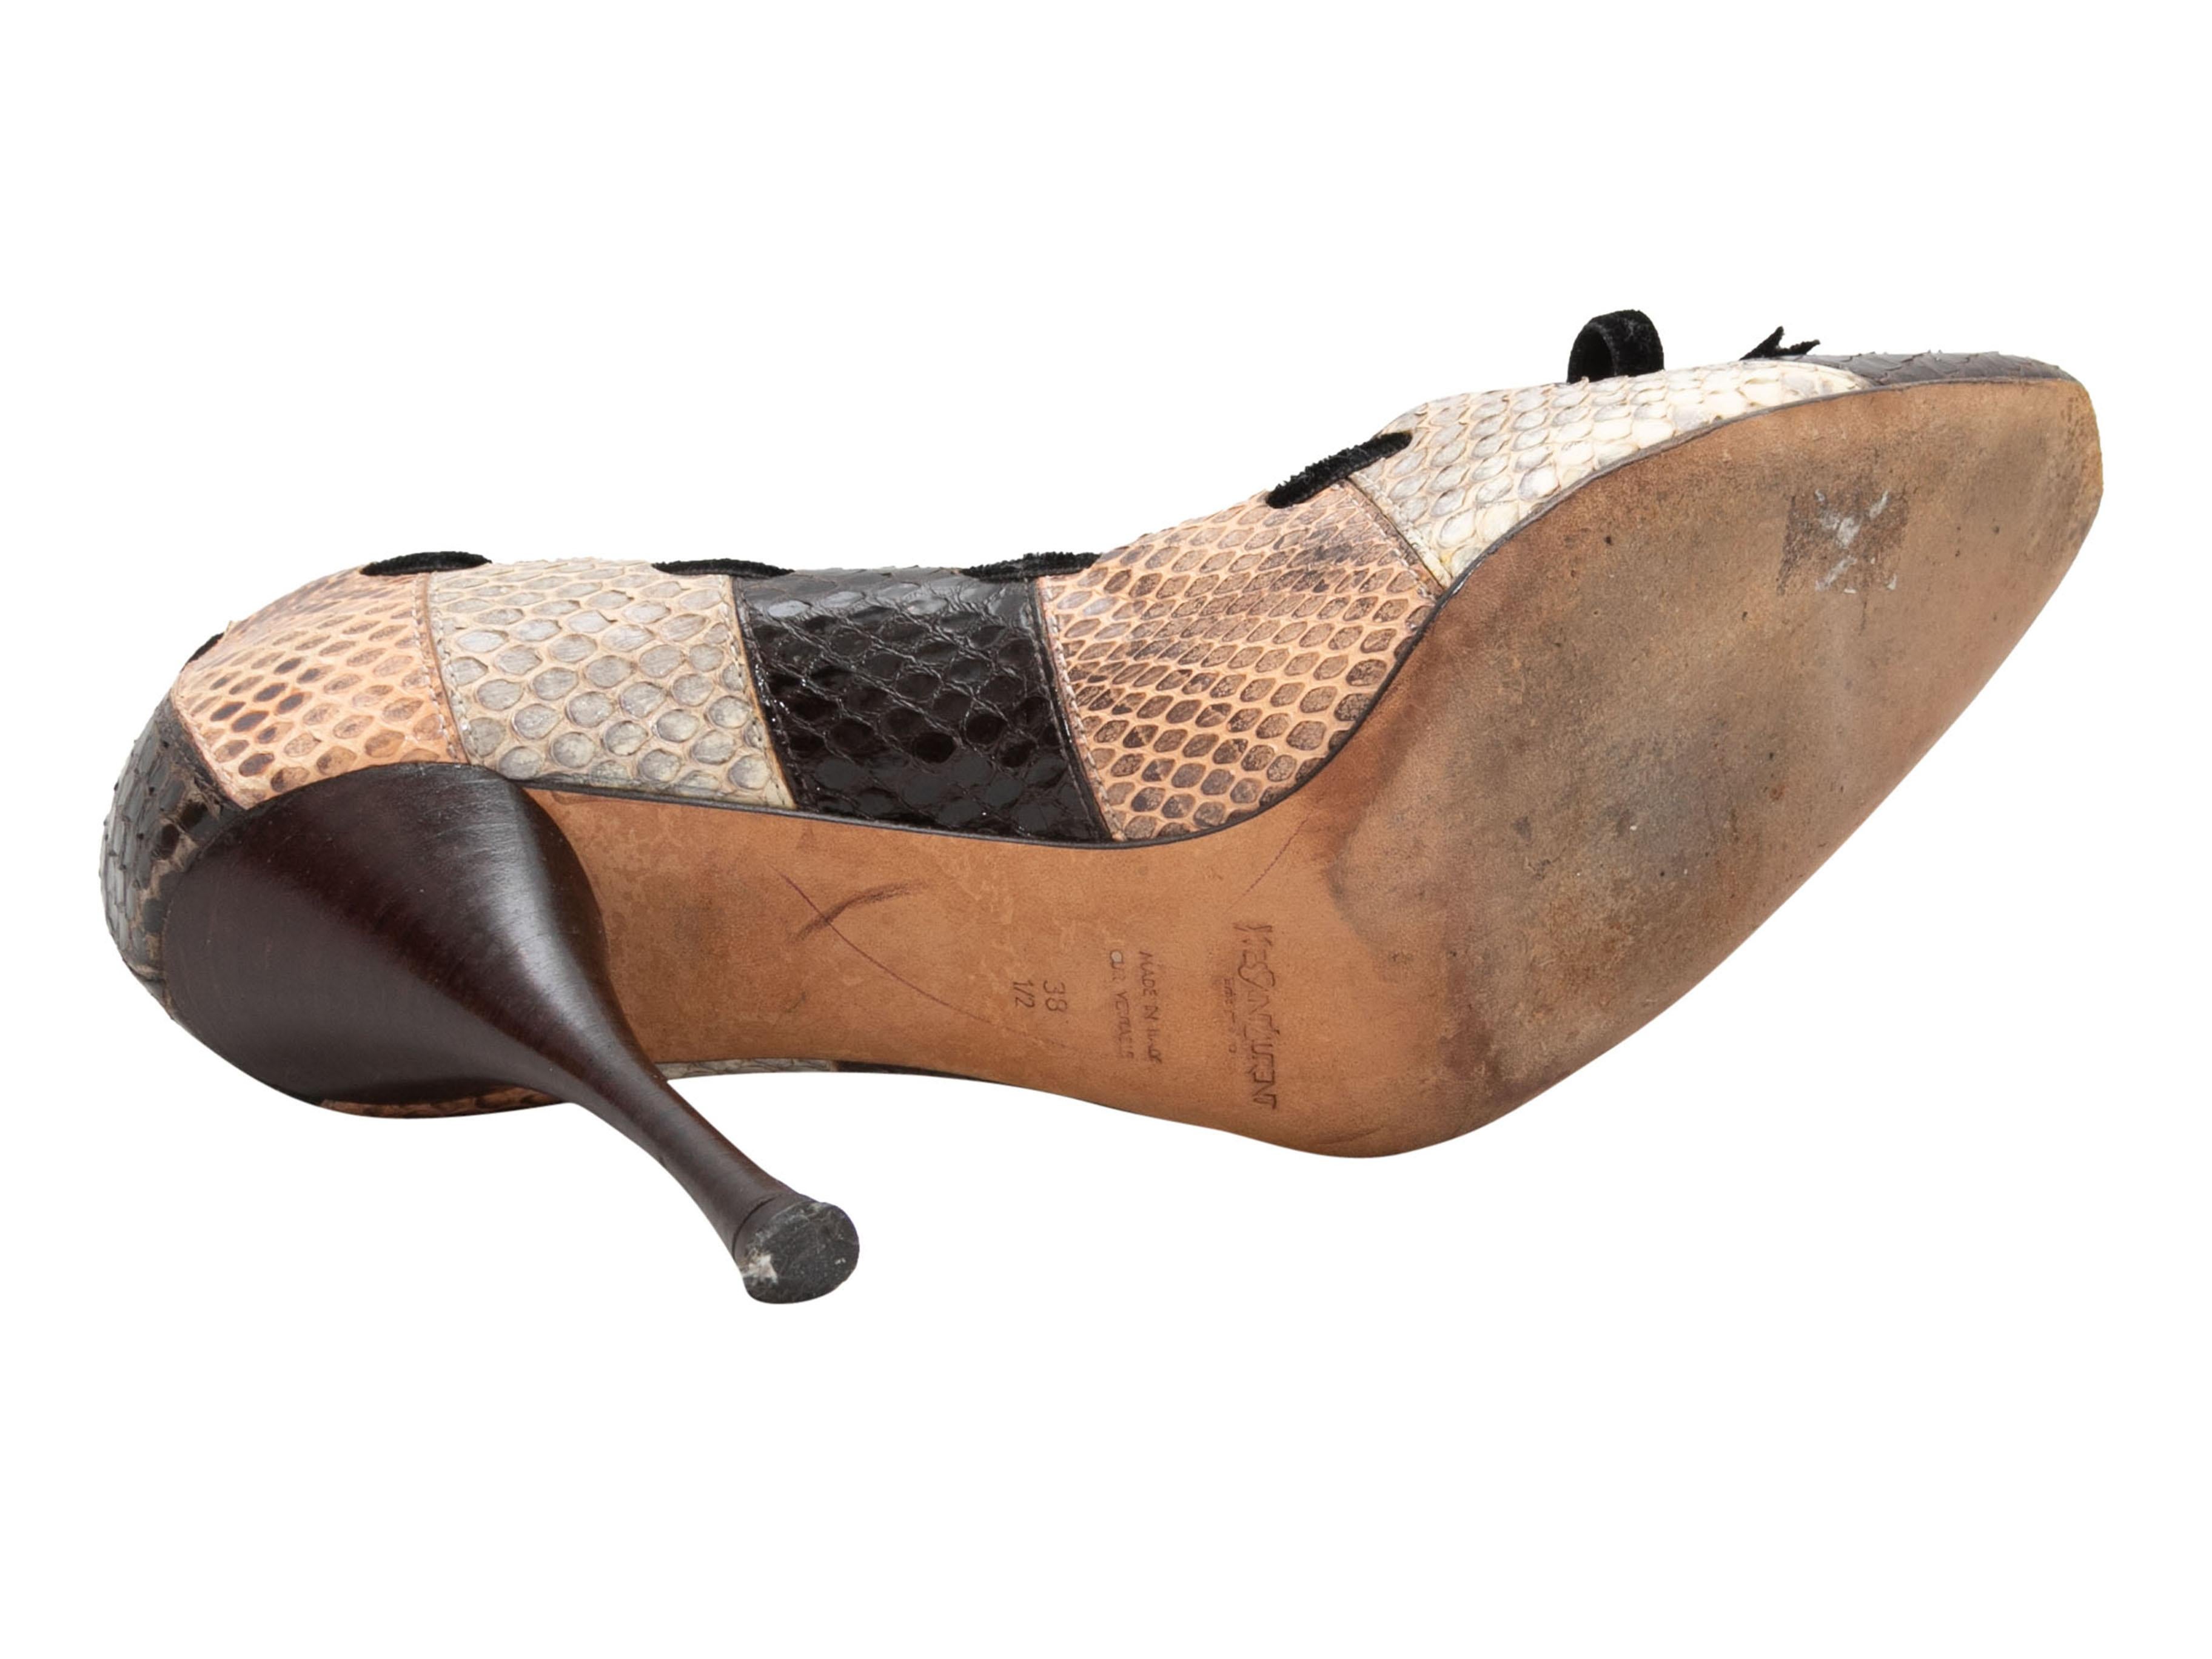 Escarpins à bout pointu en peau de serpent patchwork marron et multicolore, Yves Saint Laurent. Garniture en velours avec nœud sur le dessus. Talons à hauteur d'homme. Hauteur de talon de 4